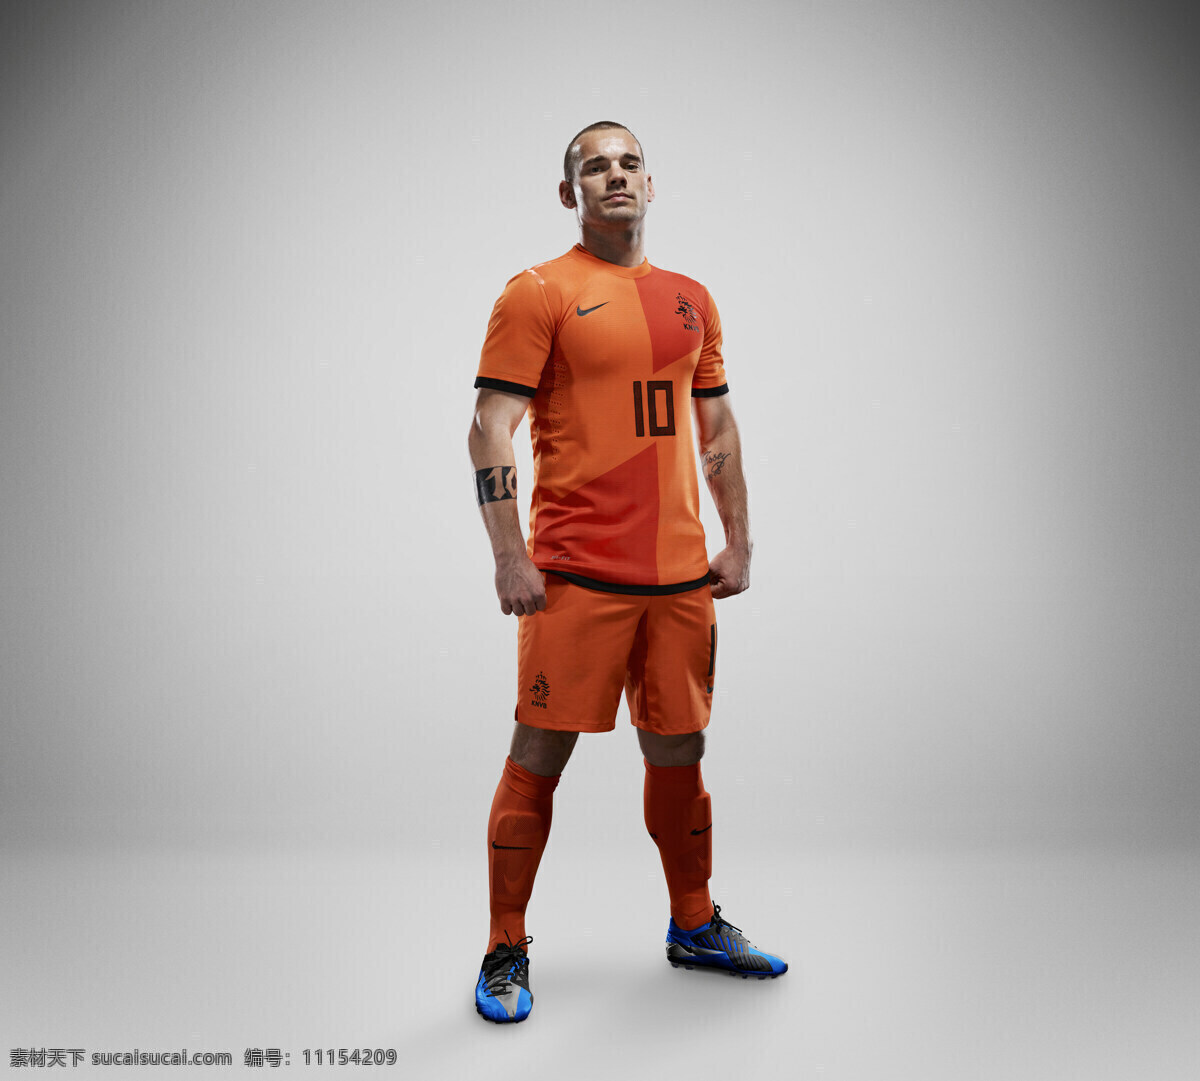 nike 荷兰国家队 队服 斯内德 平面 广告 体育运动 文化艺术